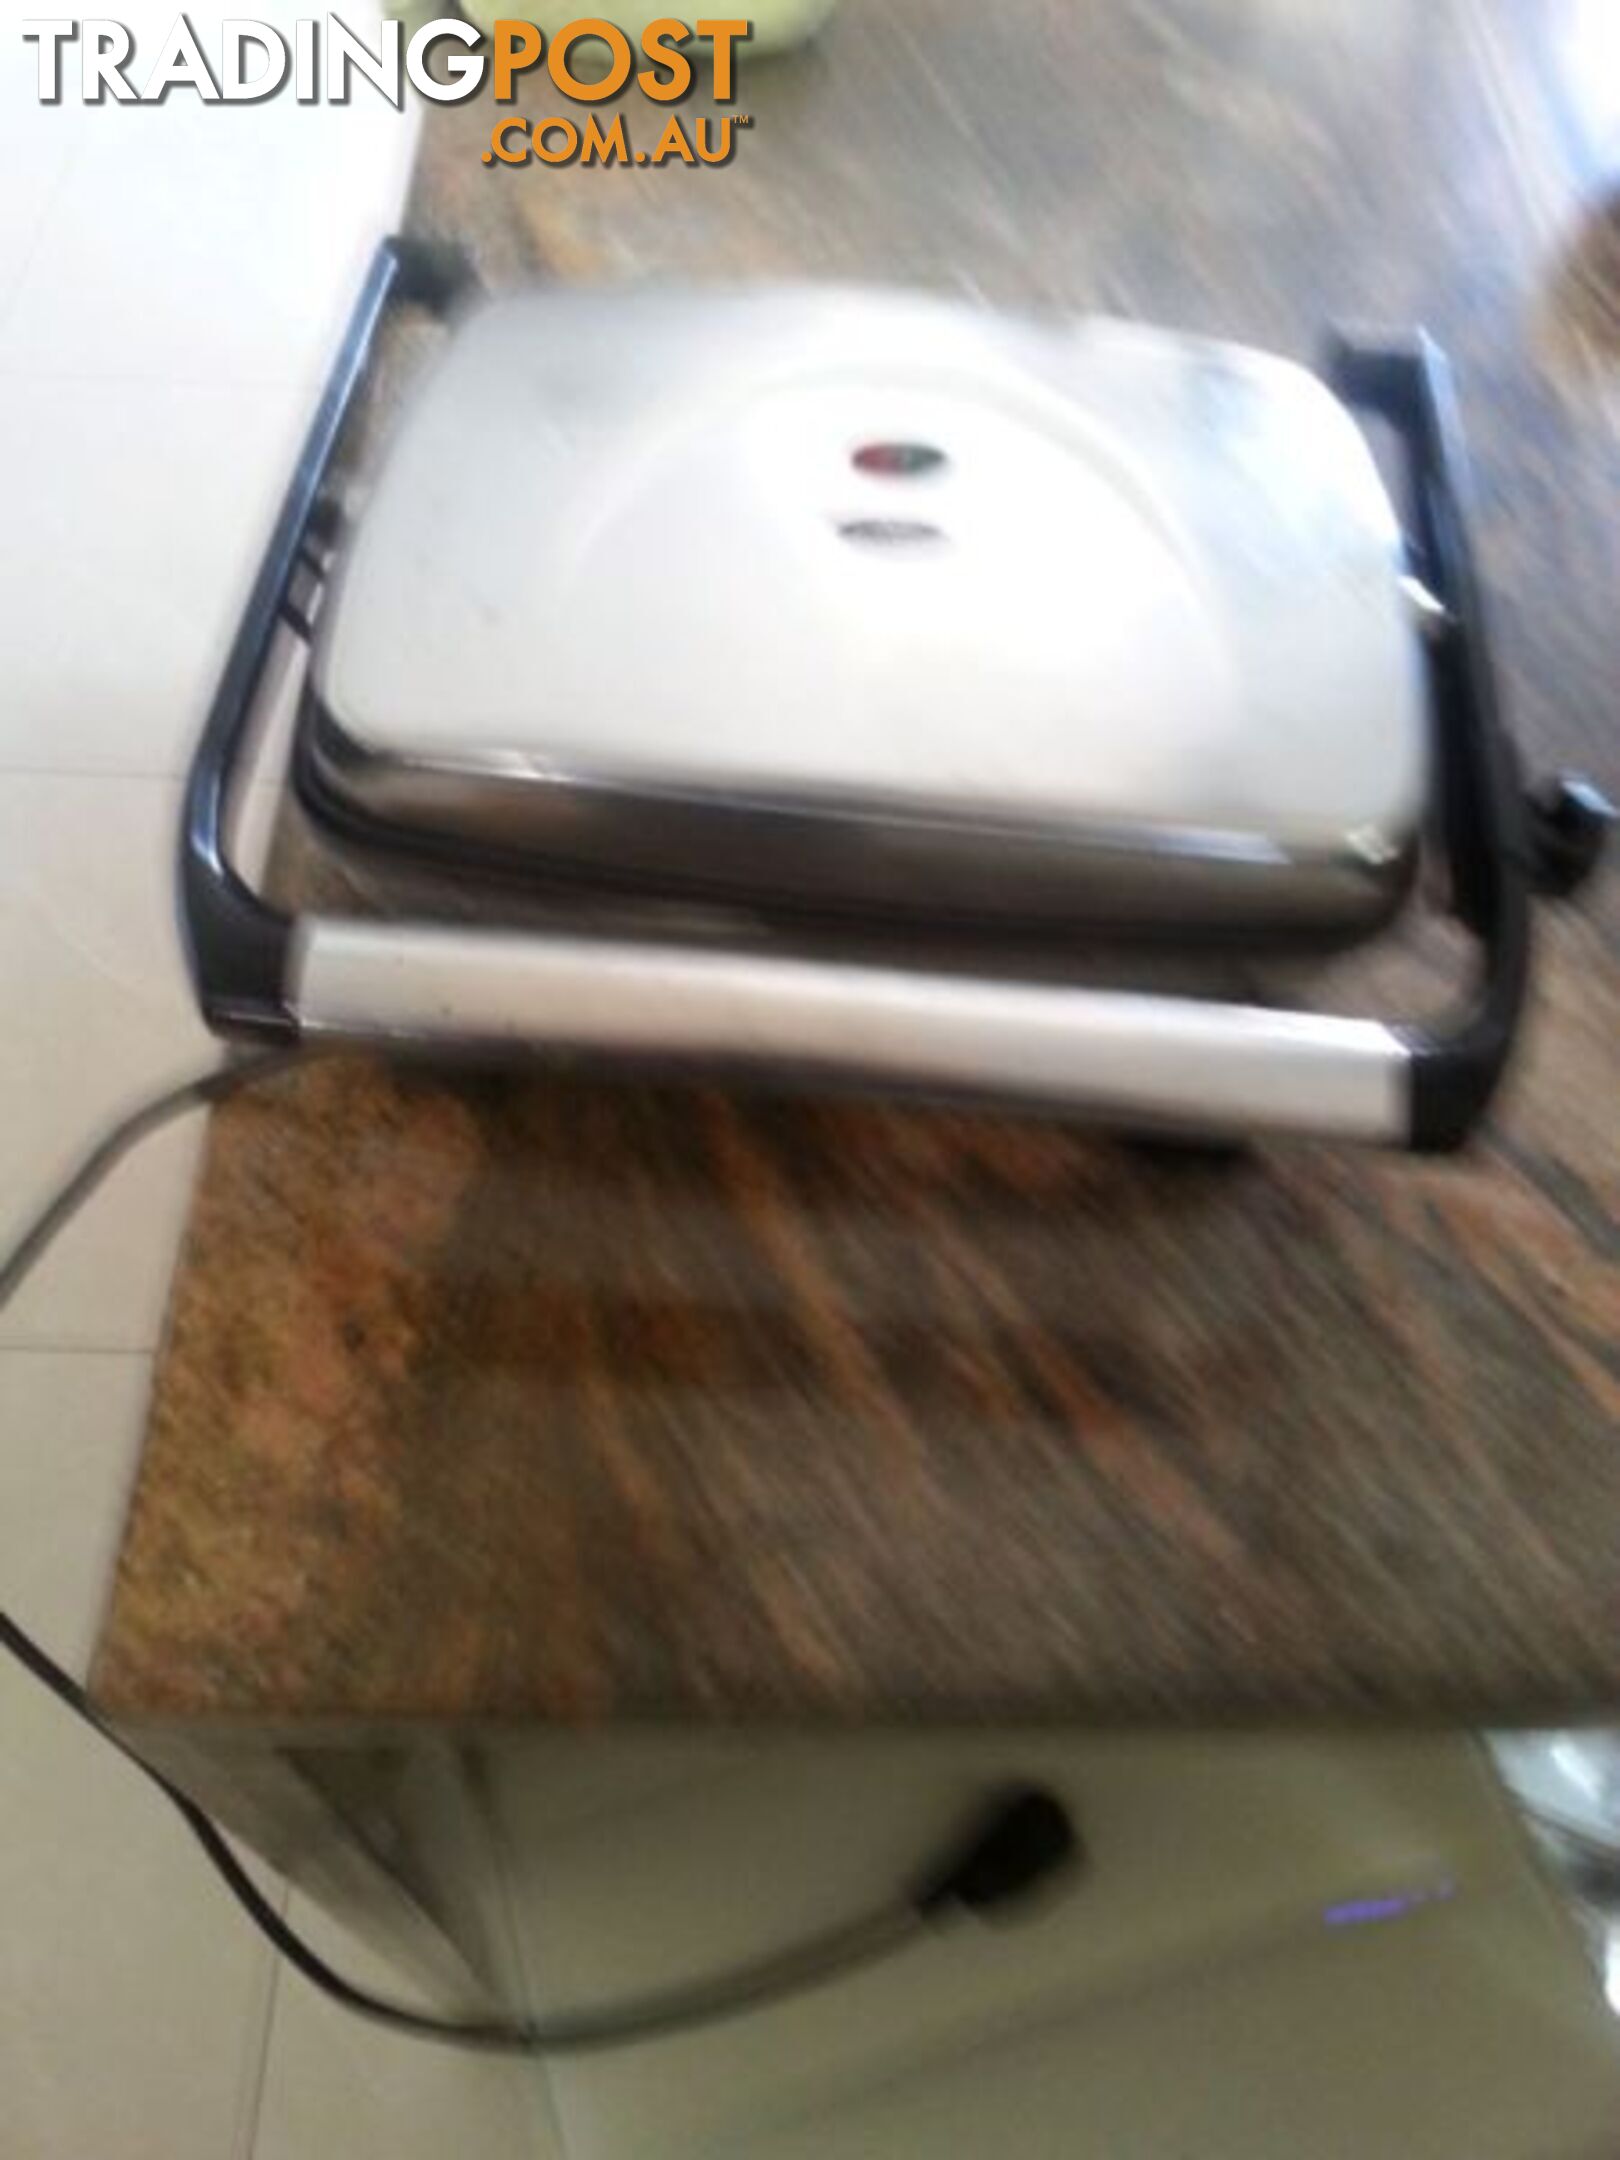 mistral toaster for sale